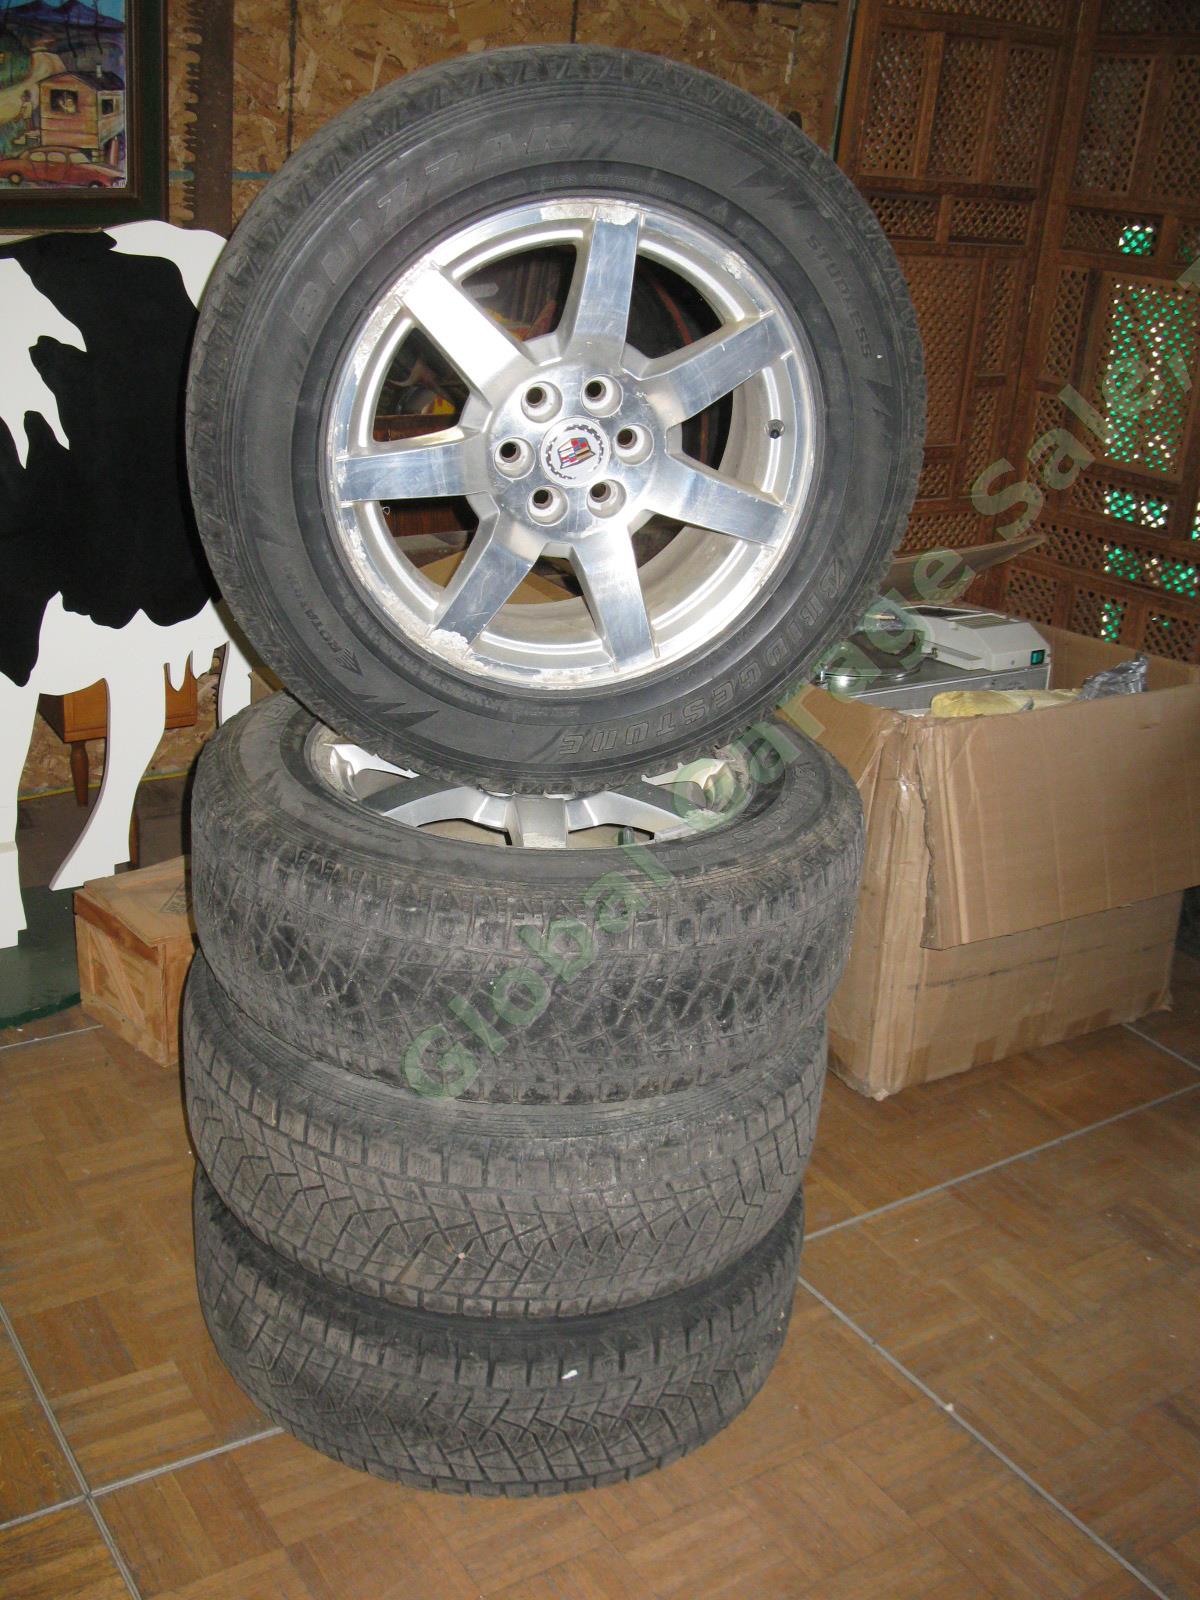 4 17"x 7.5" Rims Wheels + Bridgestone Blizzak 235/65/R17 Snow Tires Cadillac SRX